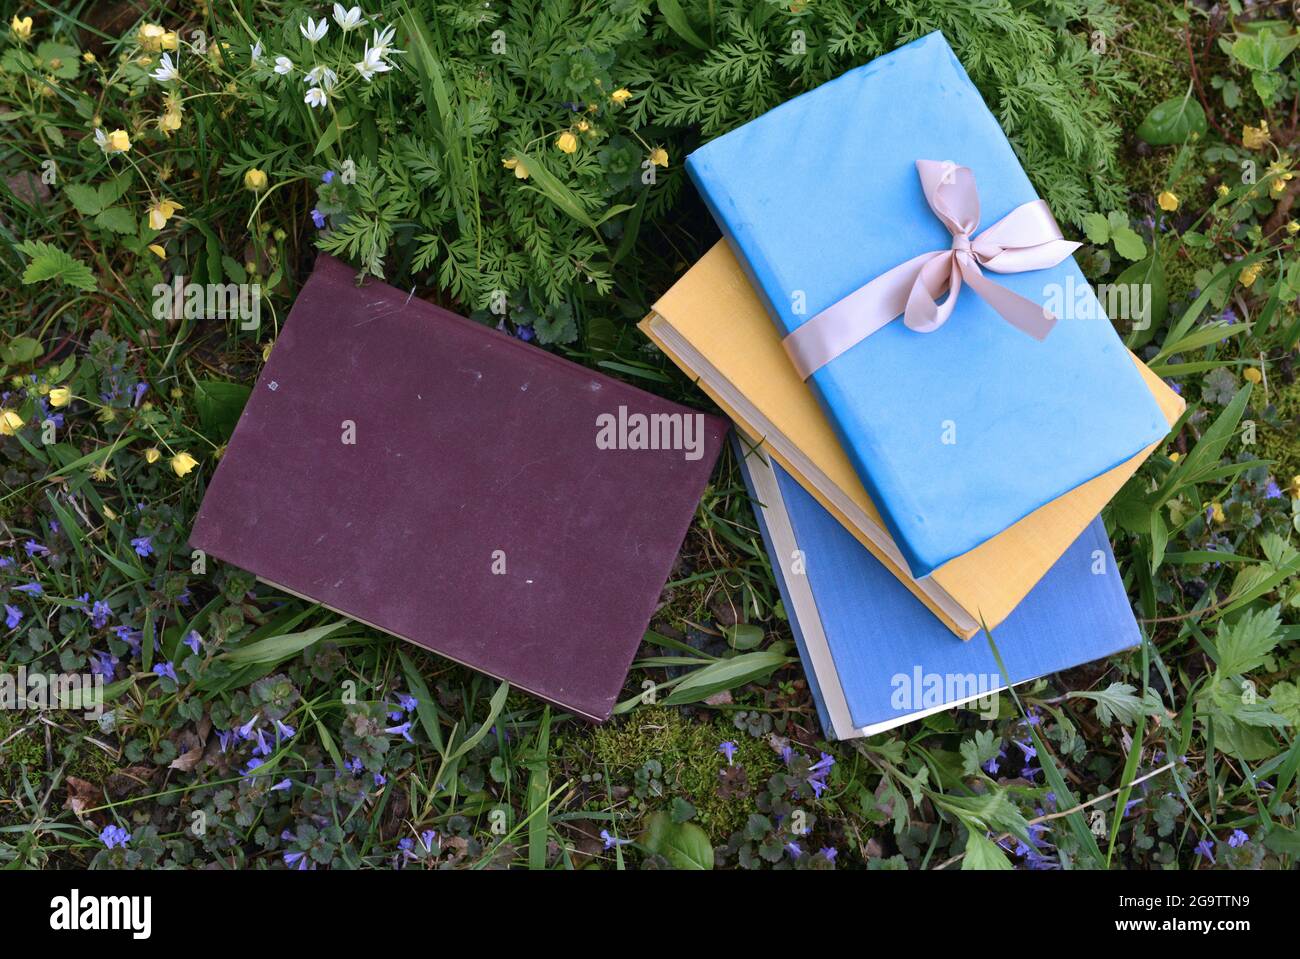 Dekoriert alte Bücher mit bunten Abdeckungen liegen auf grünem Rasen draußen. Vintage romantisches und pädagogisches Konzept Stockfoto